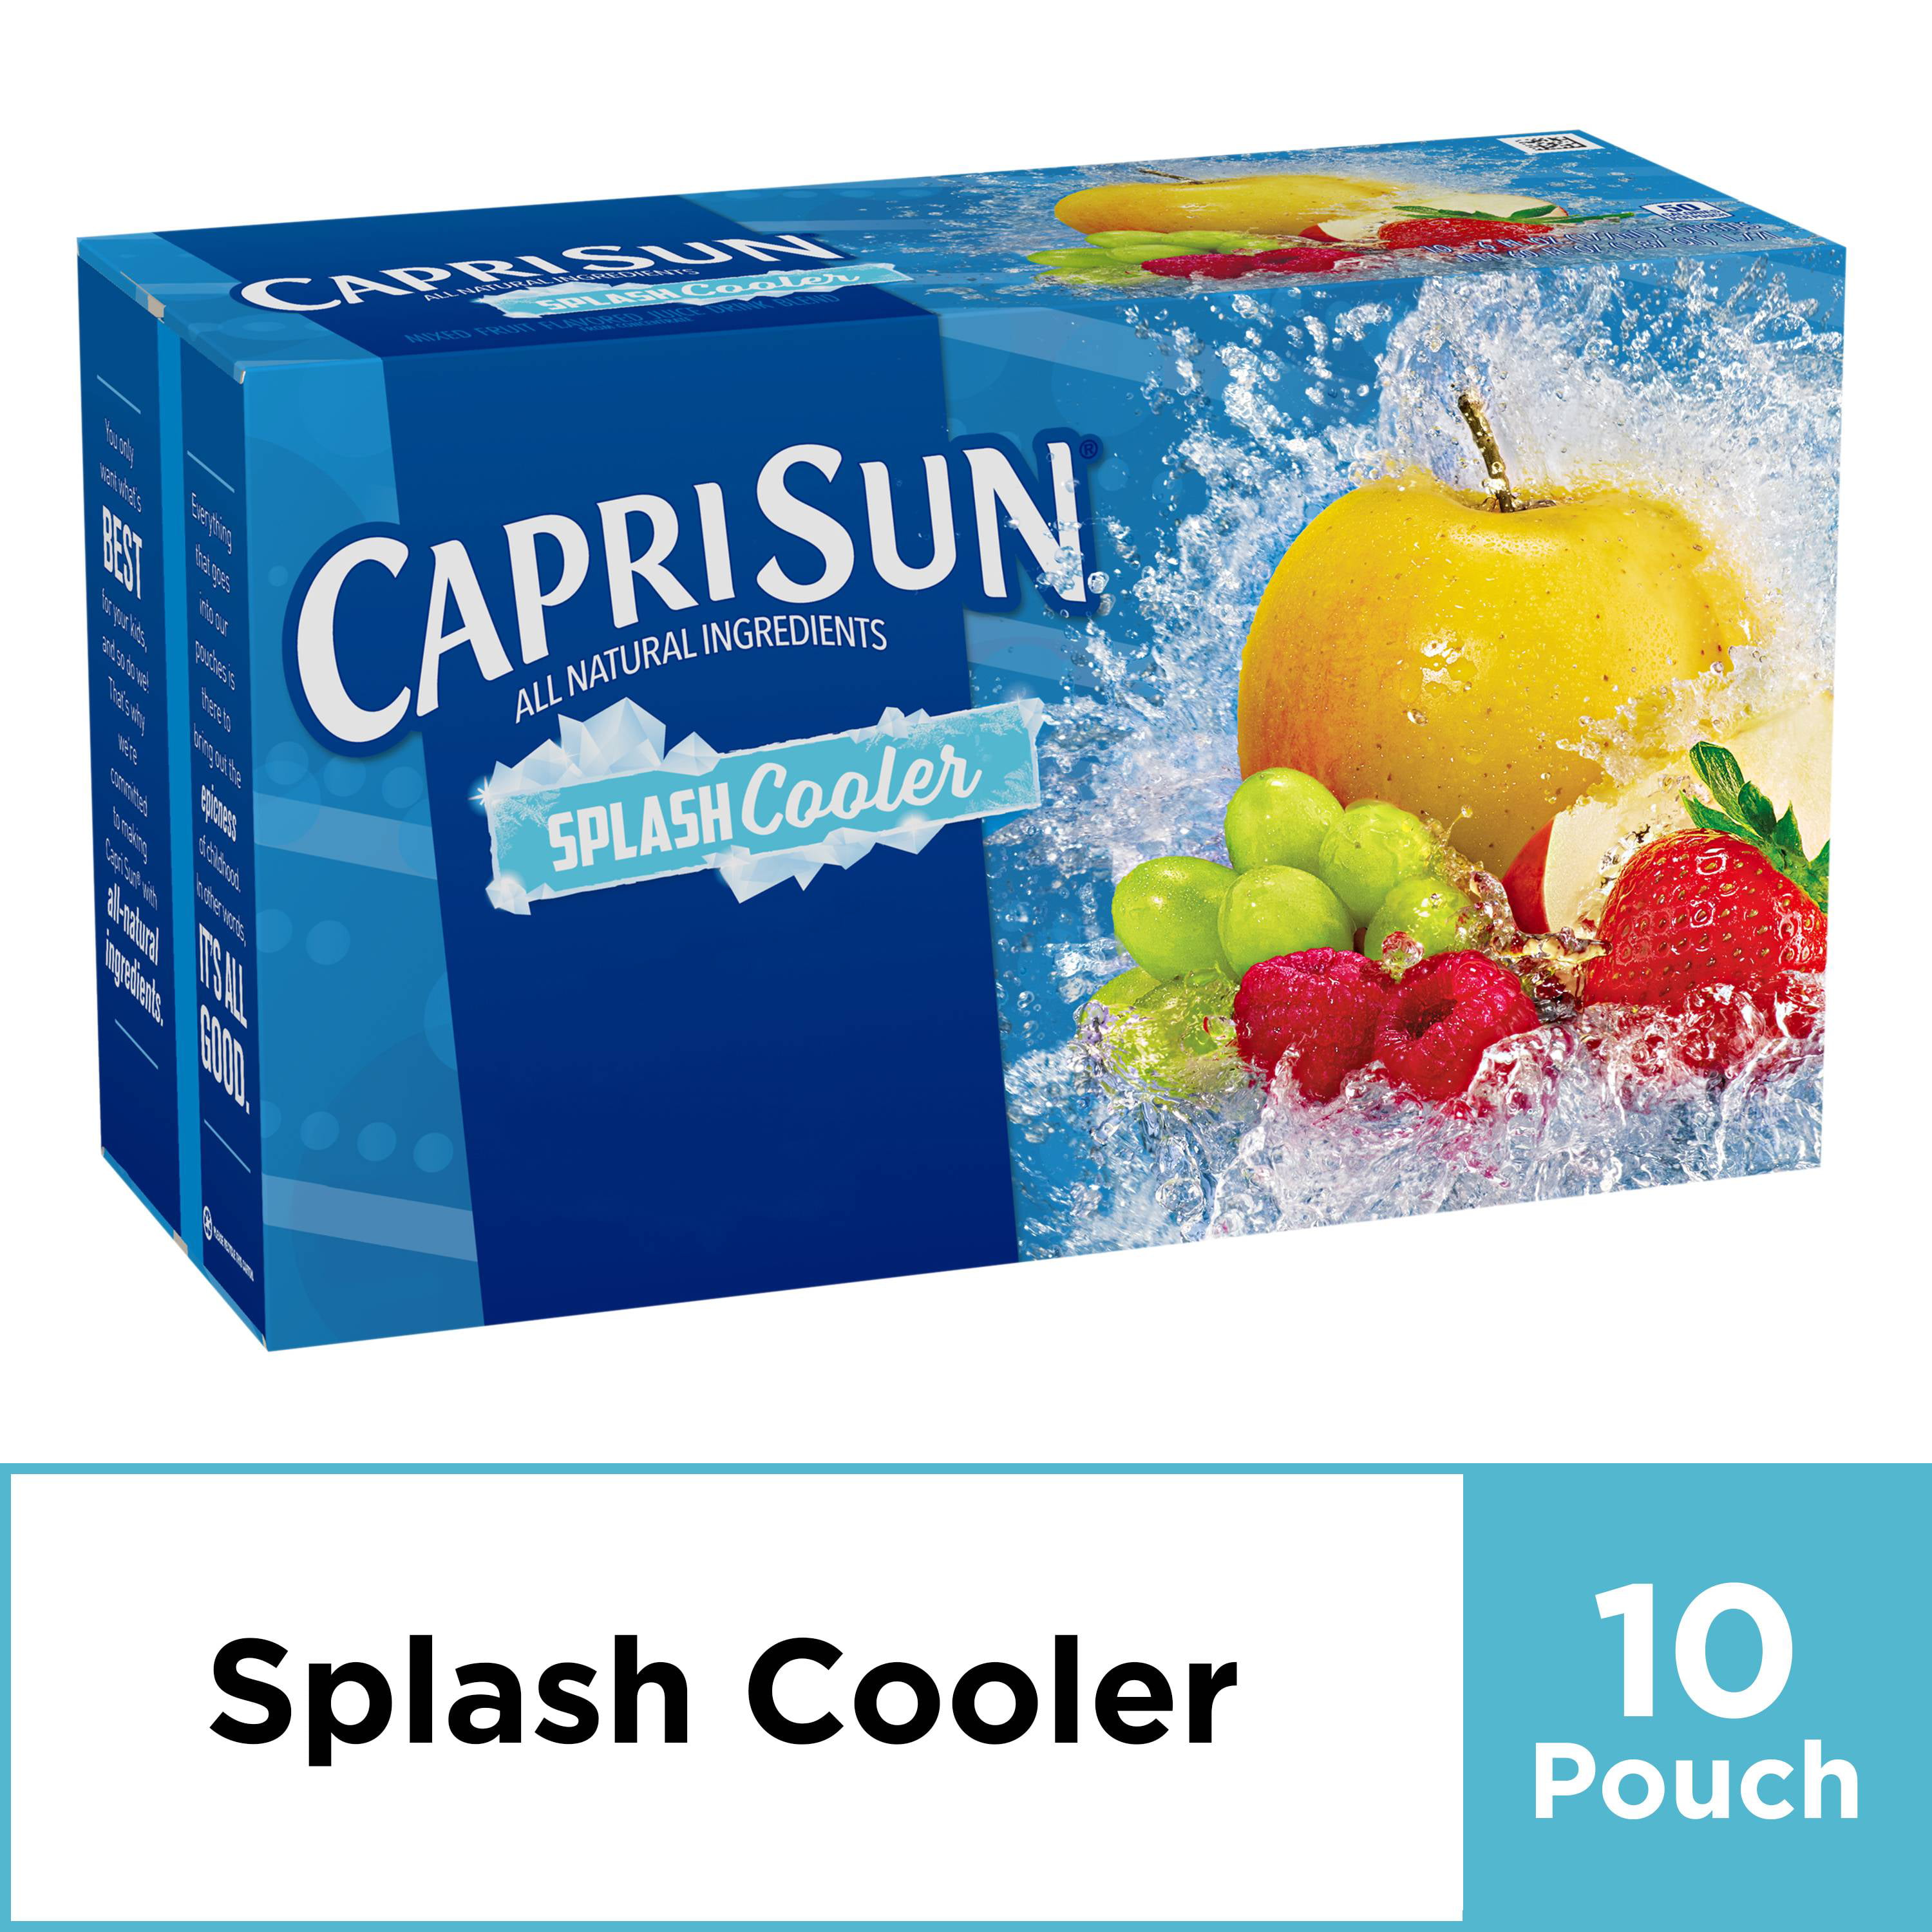 Capri Sun Splash Cooler Mixed Fruit Flavored Juice Drink Blend 10 Ct Pouche...